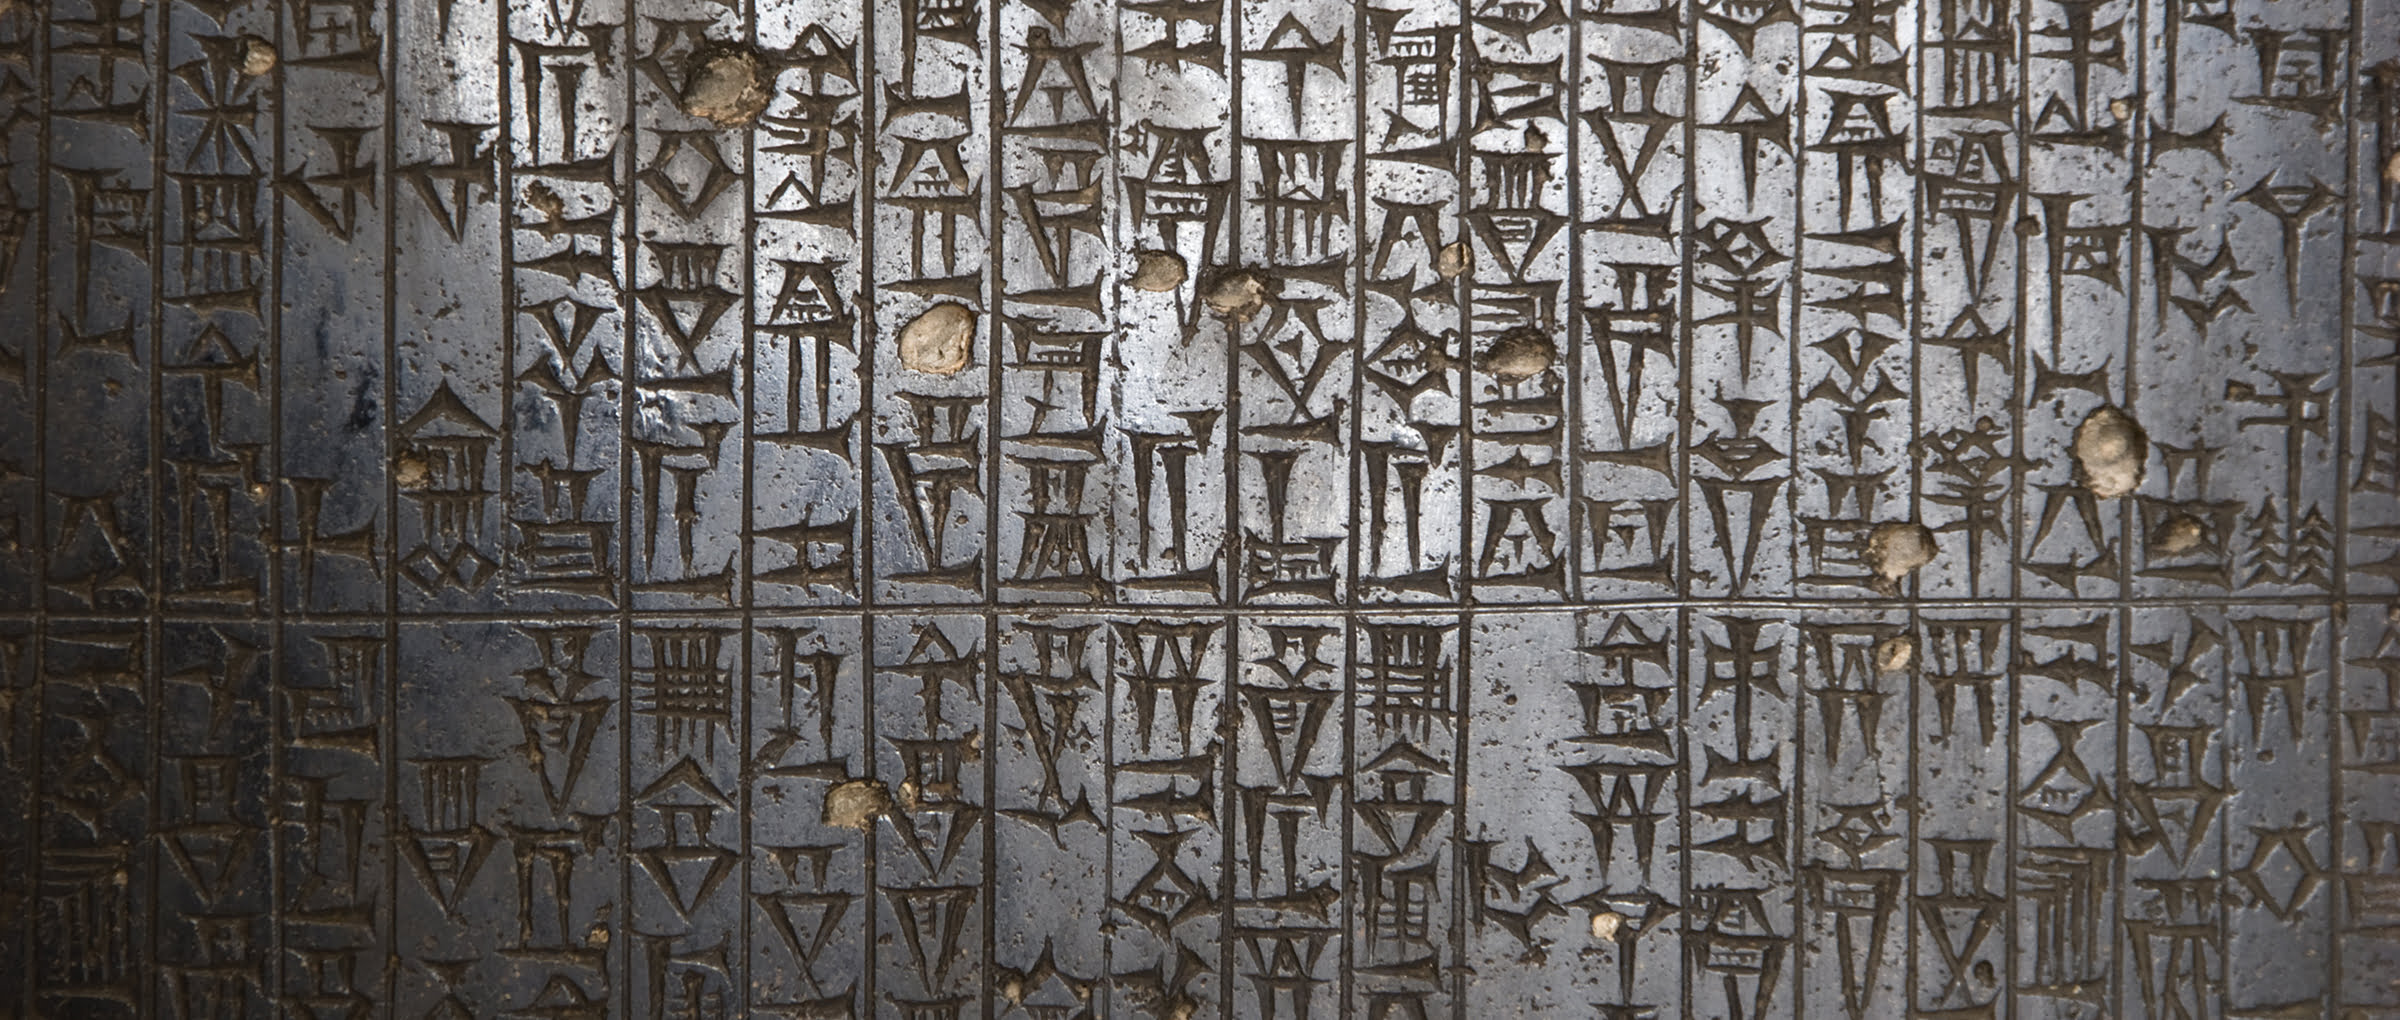 Protección legal de la gestante en el Código de Hammurabi